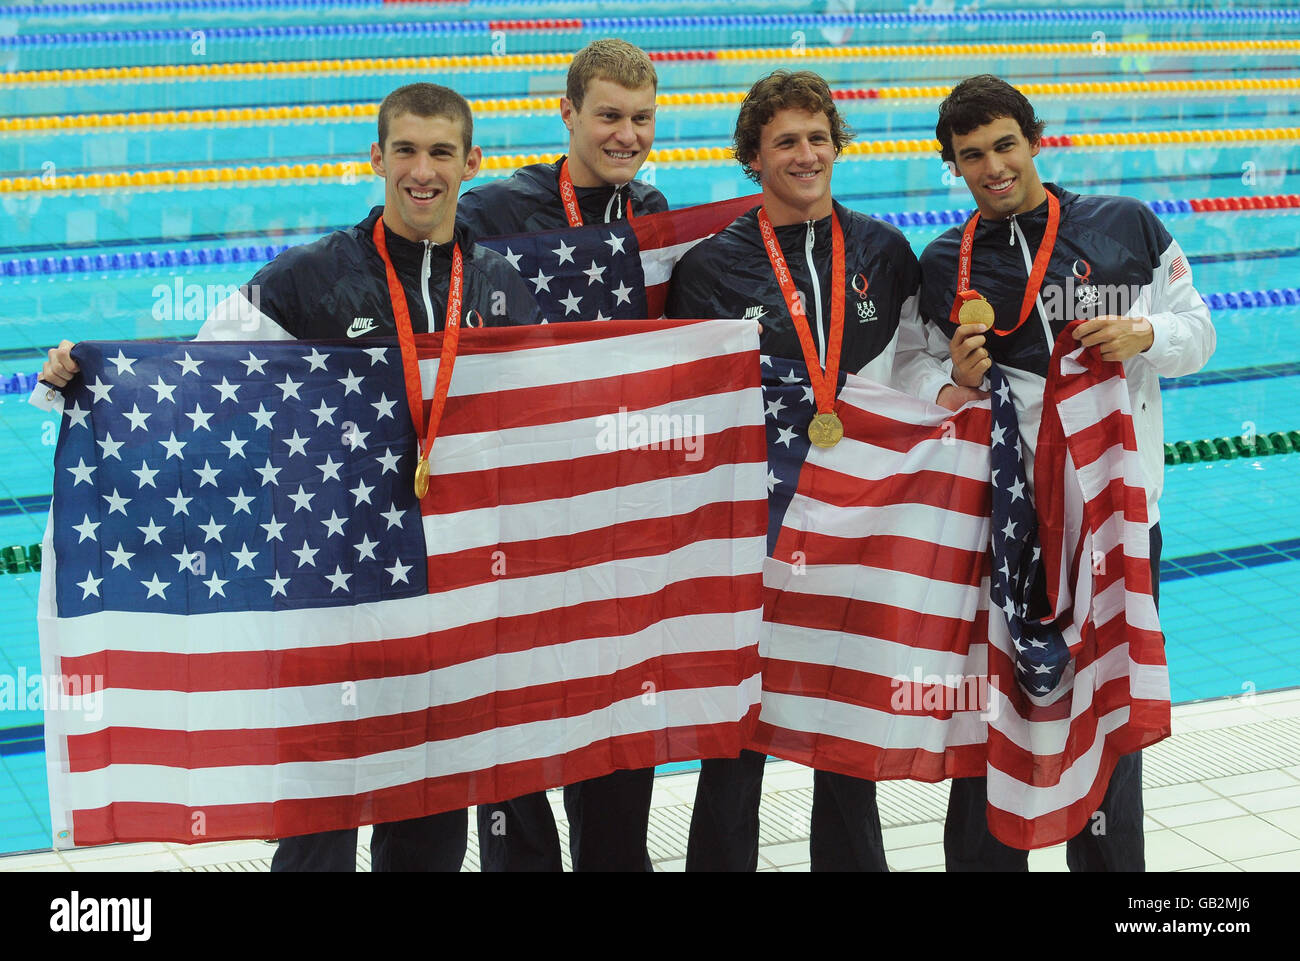 La squadra di relè freestyle 4x200m degli Stati Uniti (da sinistra a destra) Michael Phelps, Peter Vanderkaay, Ryan Lochte e Ricky Berens festeggiano con la loro medaglia d'oro al Centro Acquatico Nazionale di Pechino durante i Giochi Olimpici di Pechino 2008 in Cina. Foto Stock